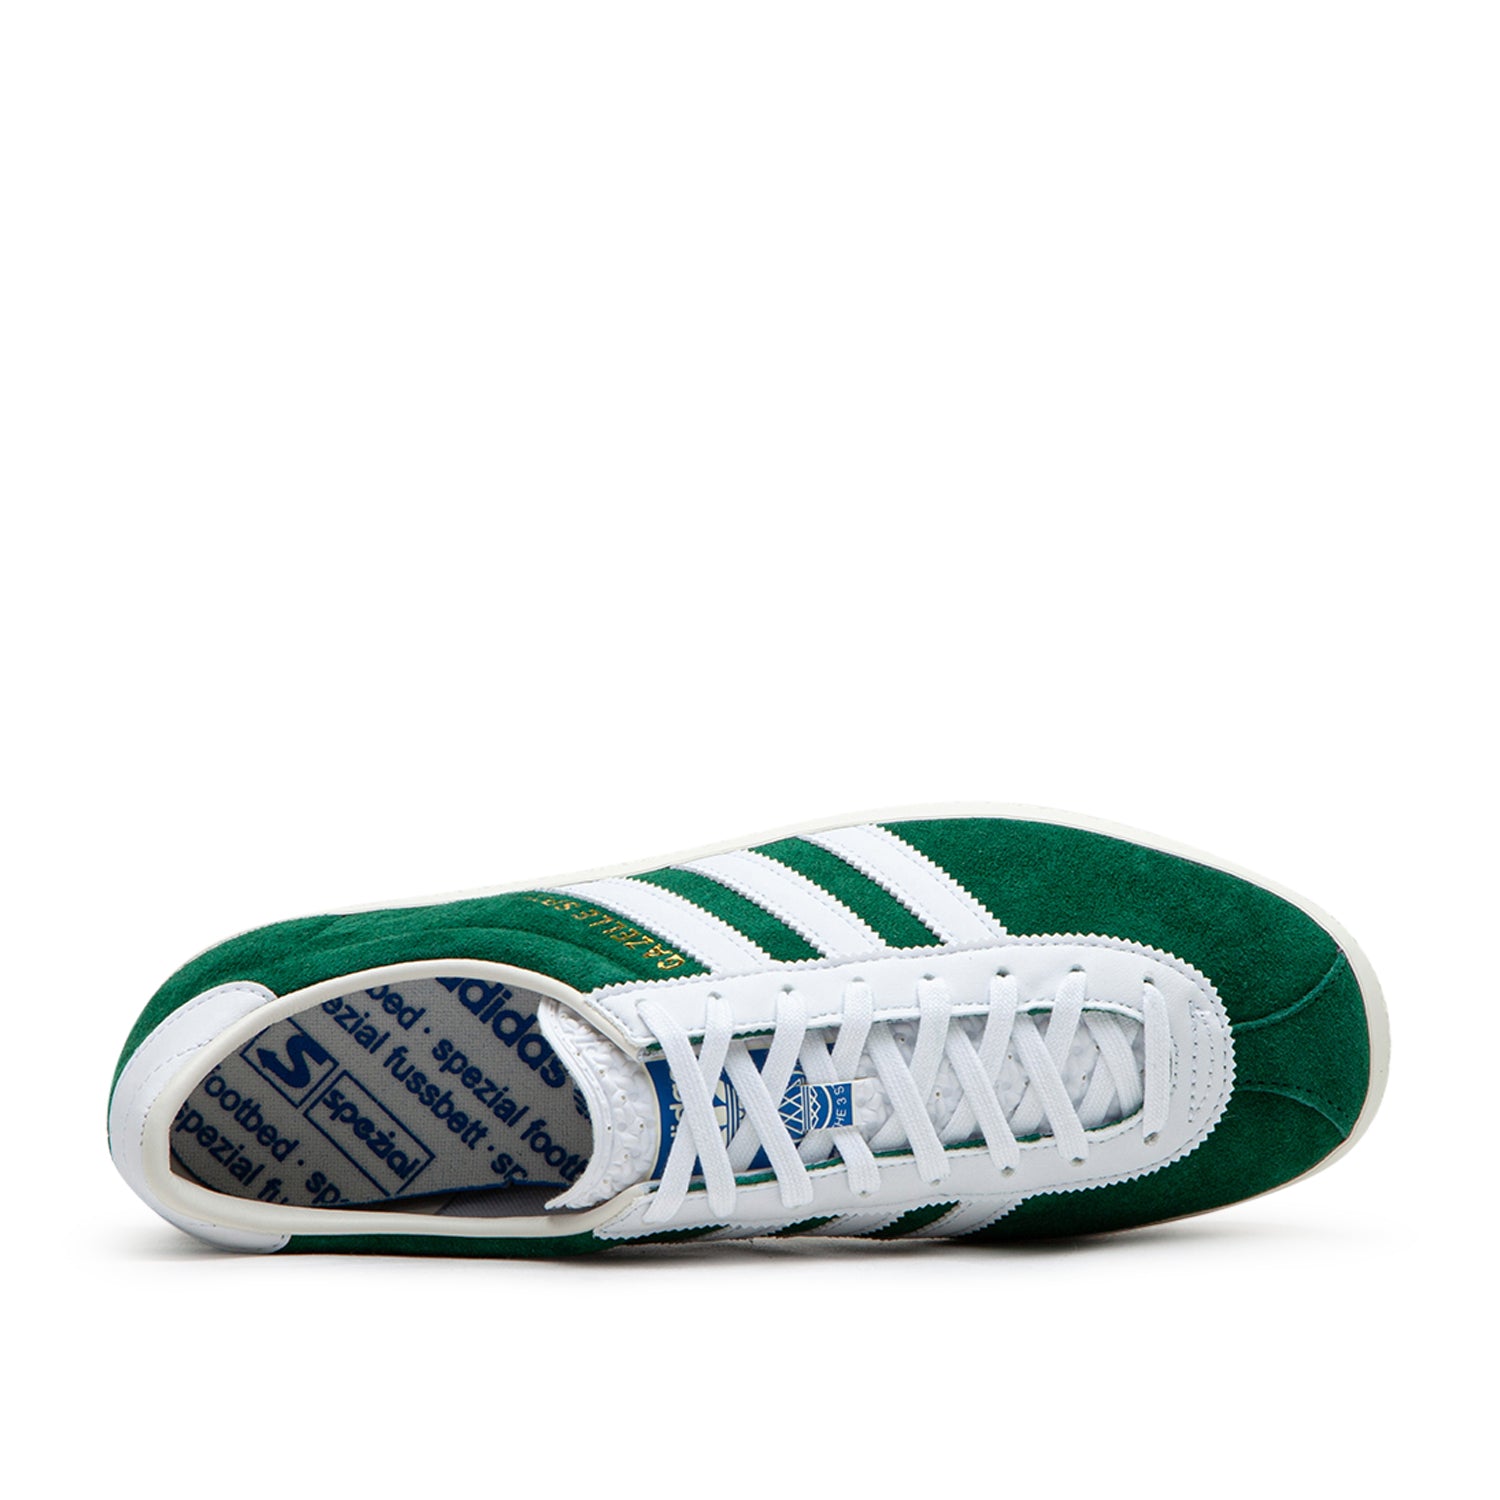 adidas Gazelle Spezial (Grün / Weiß)  - Allike Store